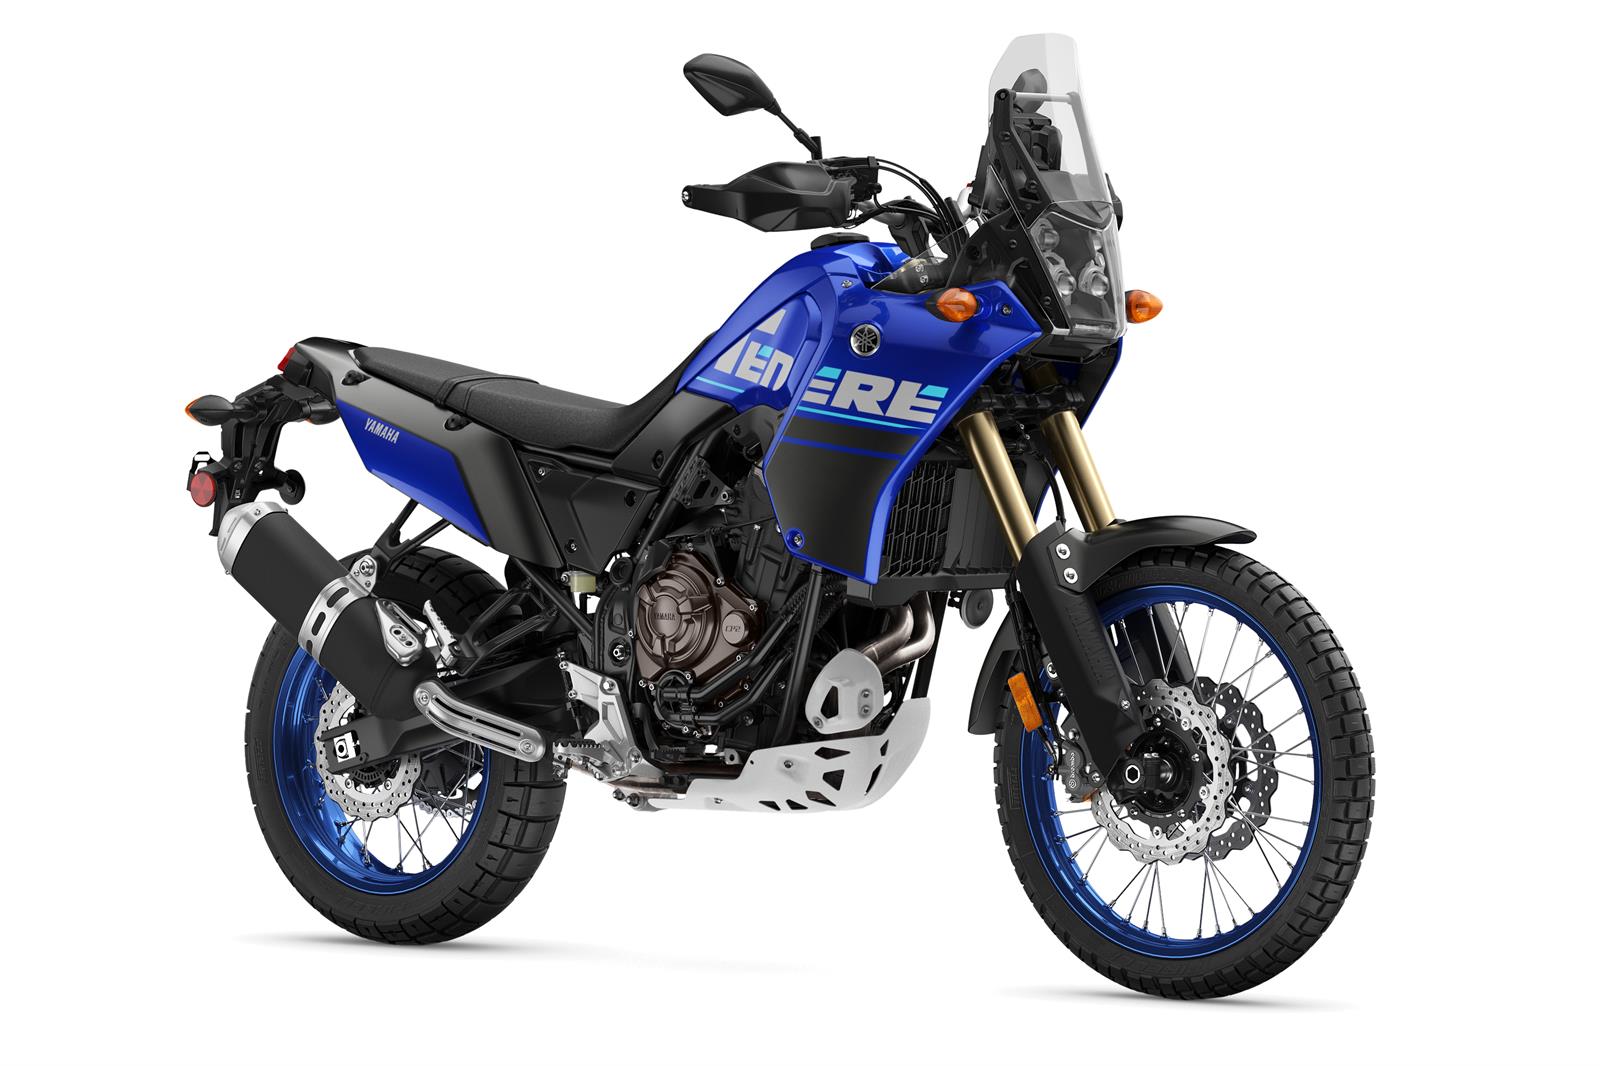 Yamaha Tenere 700 Motorcycle For Sale